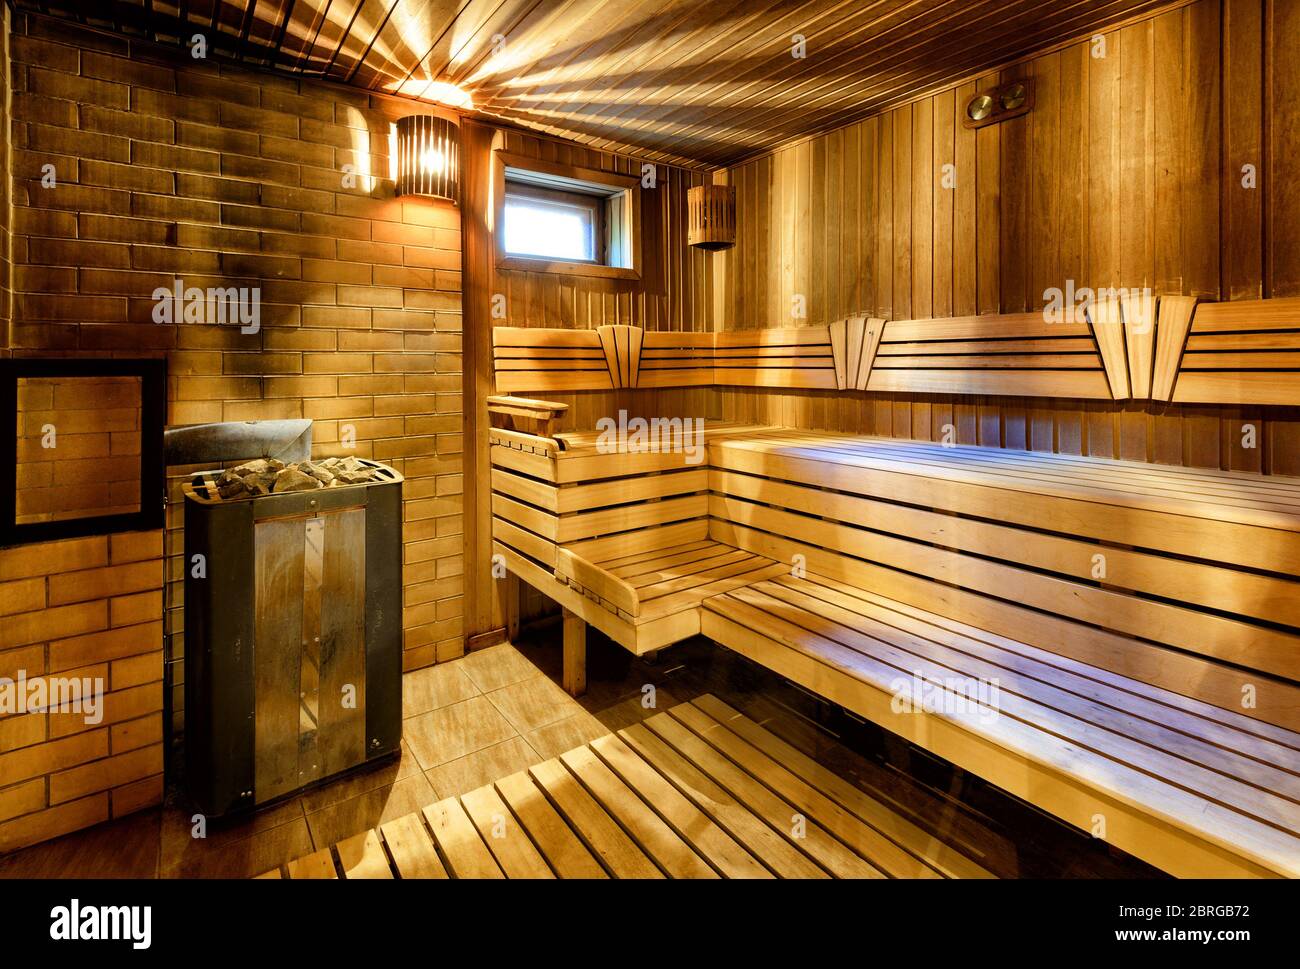 Classic wooden sauna interior in Russia Stock Photo